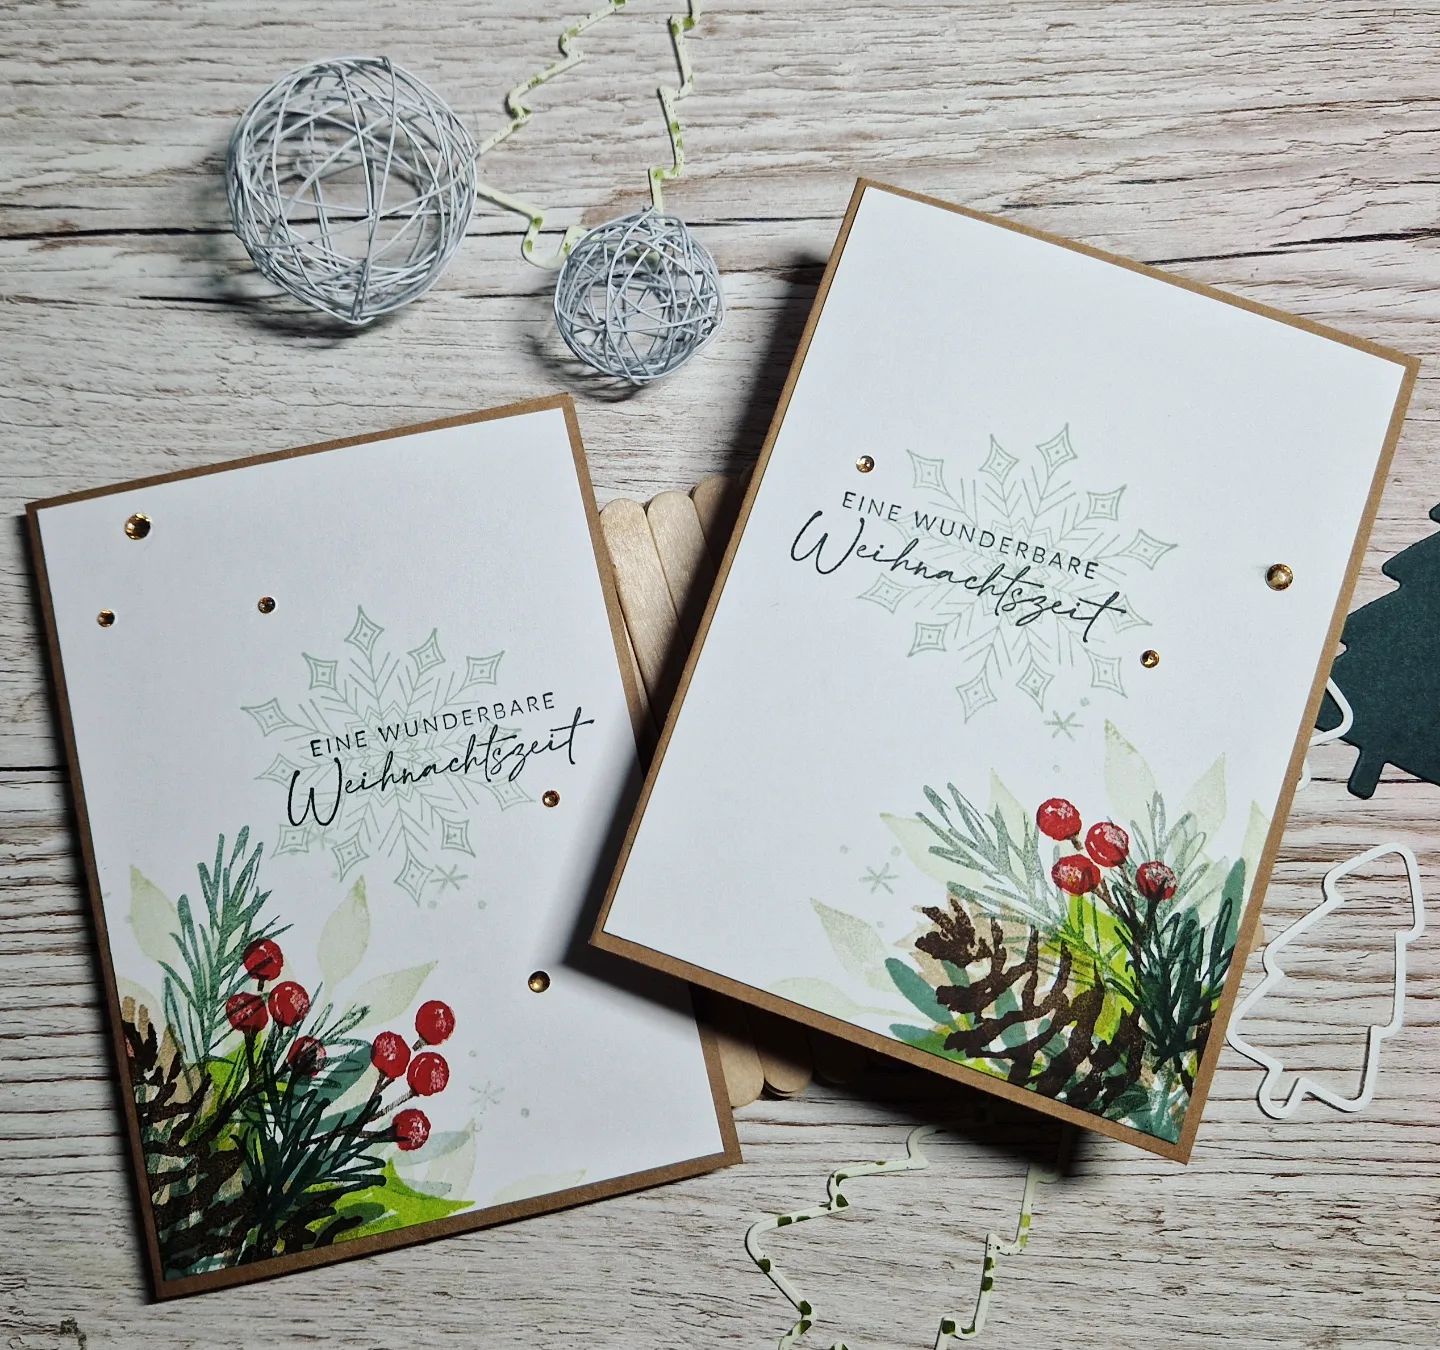 Beim kreativen Stammtisch sind diese hübschen weihnachtlichen Grußkarten entstanden. Dank der lieben Claudia von @claudias.kreativwerke, die uns diese tolle Technik nach der lieben @stampinxime gezeigt hat. Das macht so viel Spaß.

#stempeltierchenleipzig #stampinup #basteln #selbstgemacht #Mitliebe #DIY #weilmirdasspaßmacht #blogger #happy #papierliebe #cards #karten #stempeln #freufreufreu #weihnachten #Weihnachtscountdown #weihnachtspost